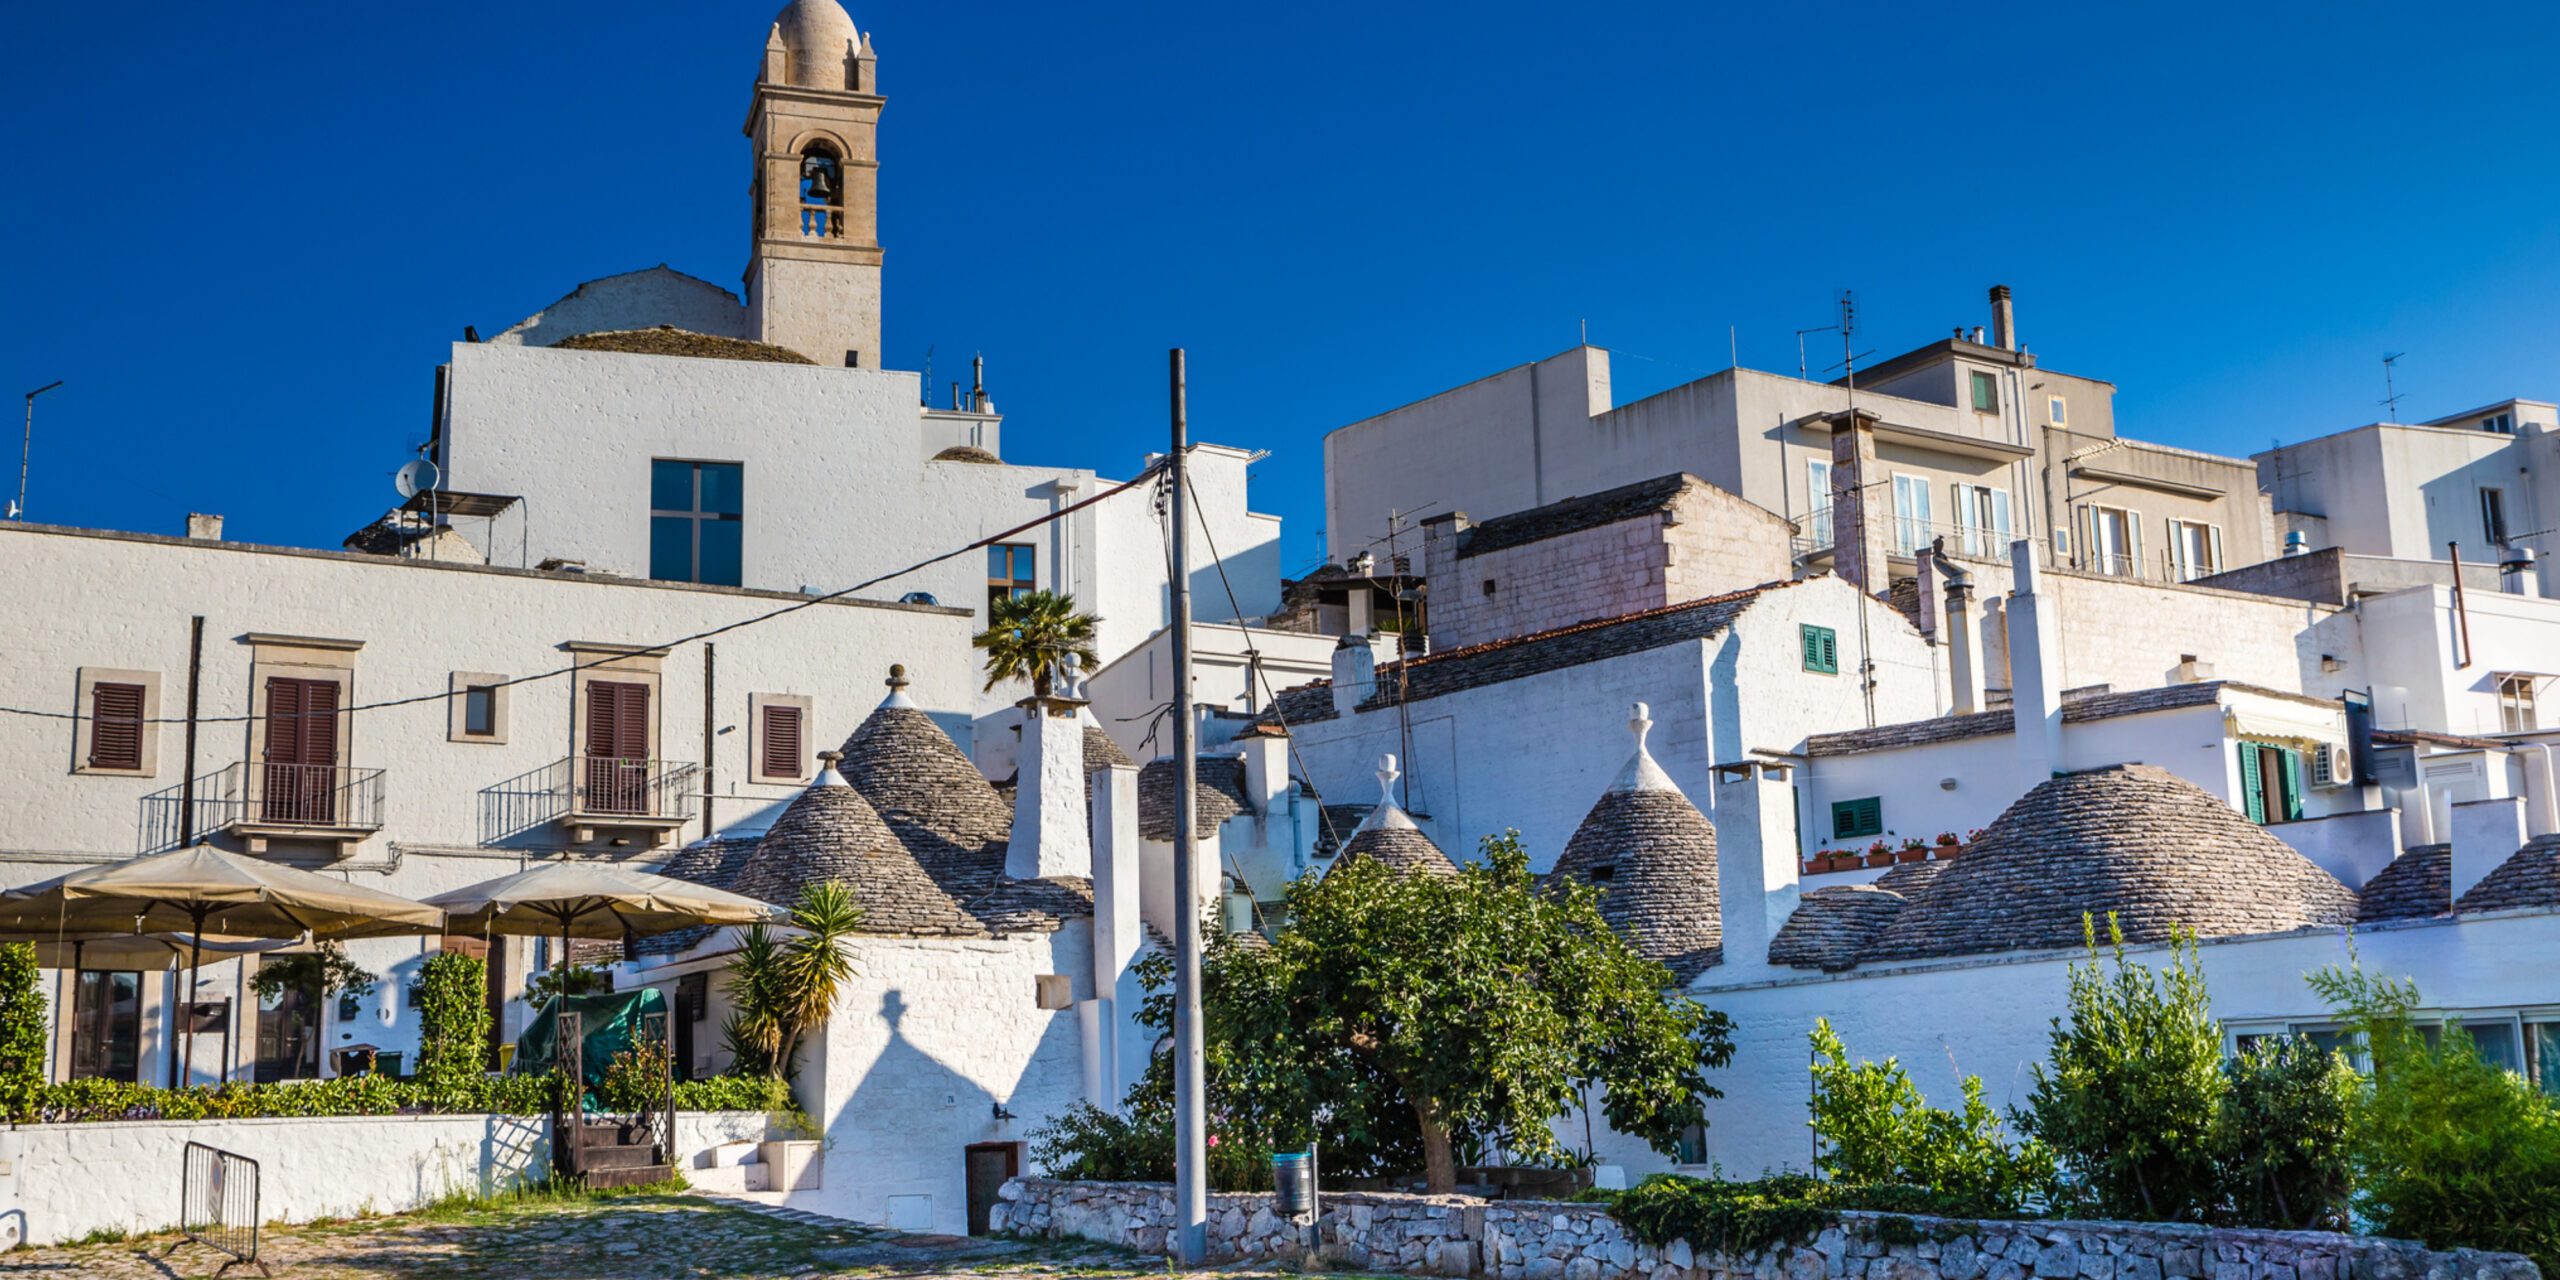 Trulli and More: The Unique Architecture of Puglia, Italy